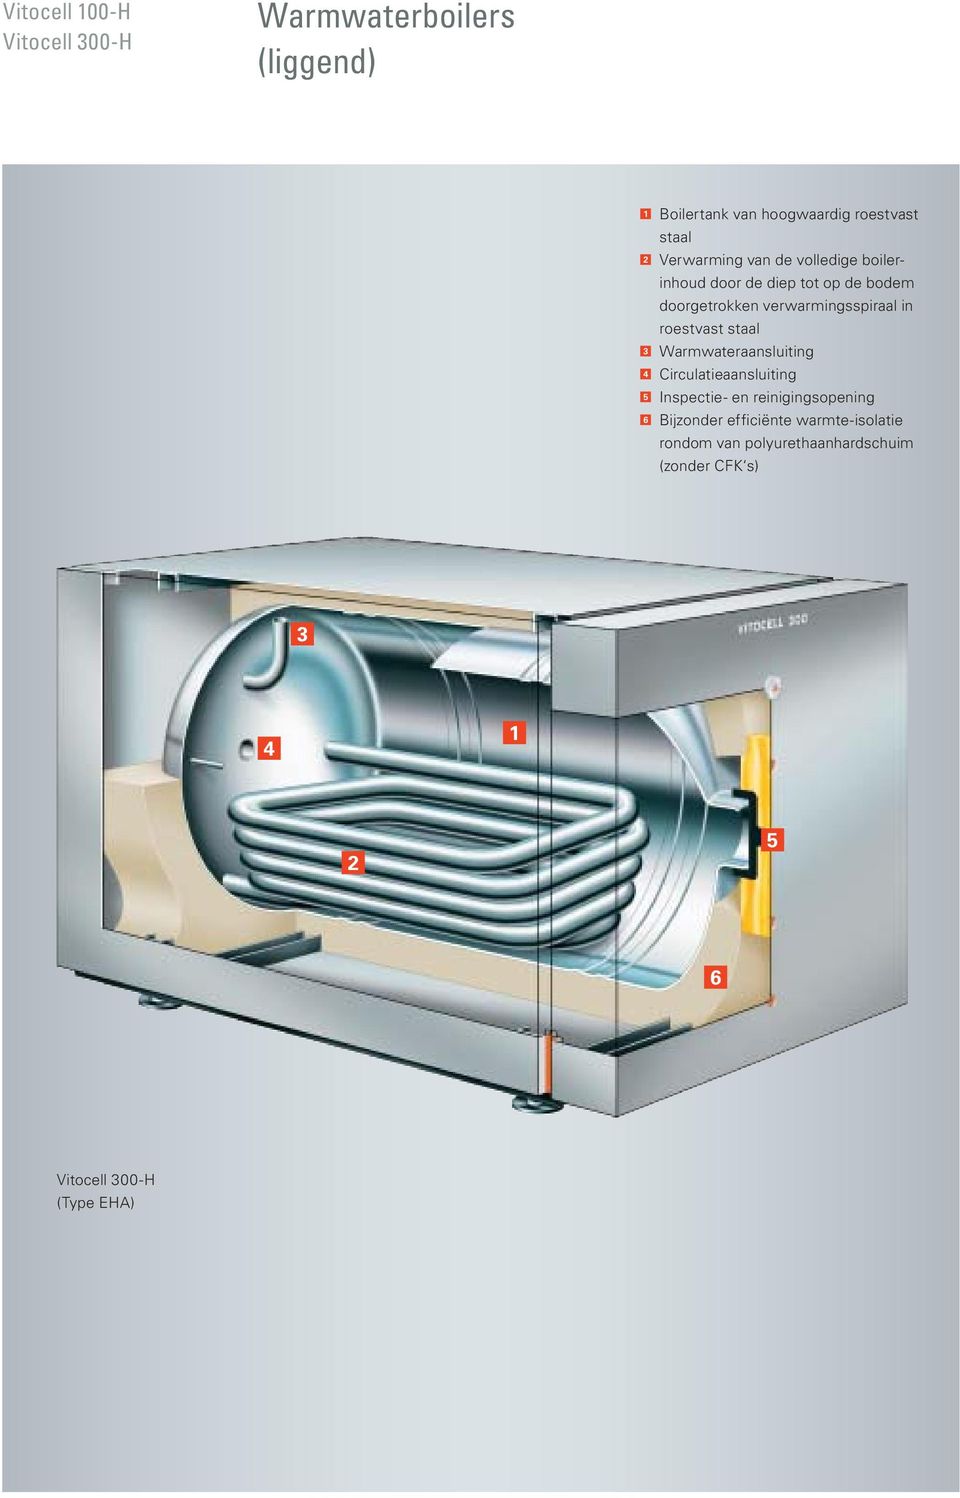 roestvast staal 3 Warmwateraansluiting 4 Circulatieaansluiting 5 Inspectie- en reinigingsopening 6